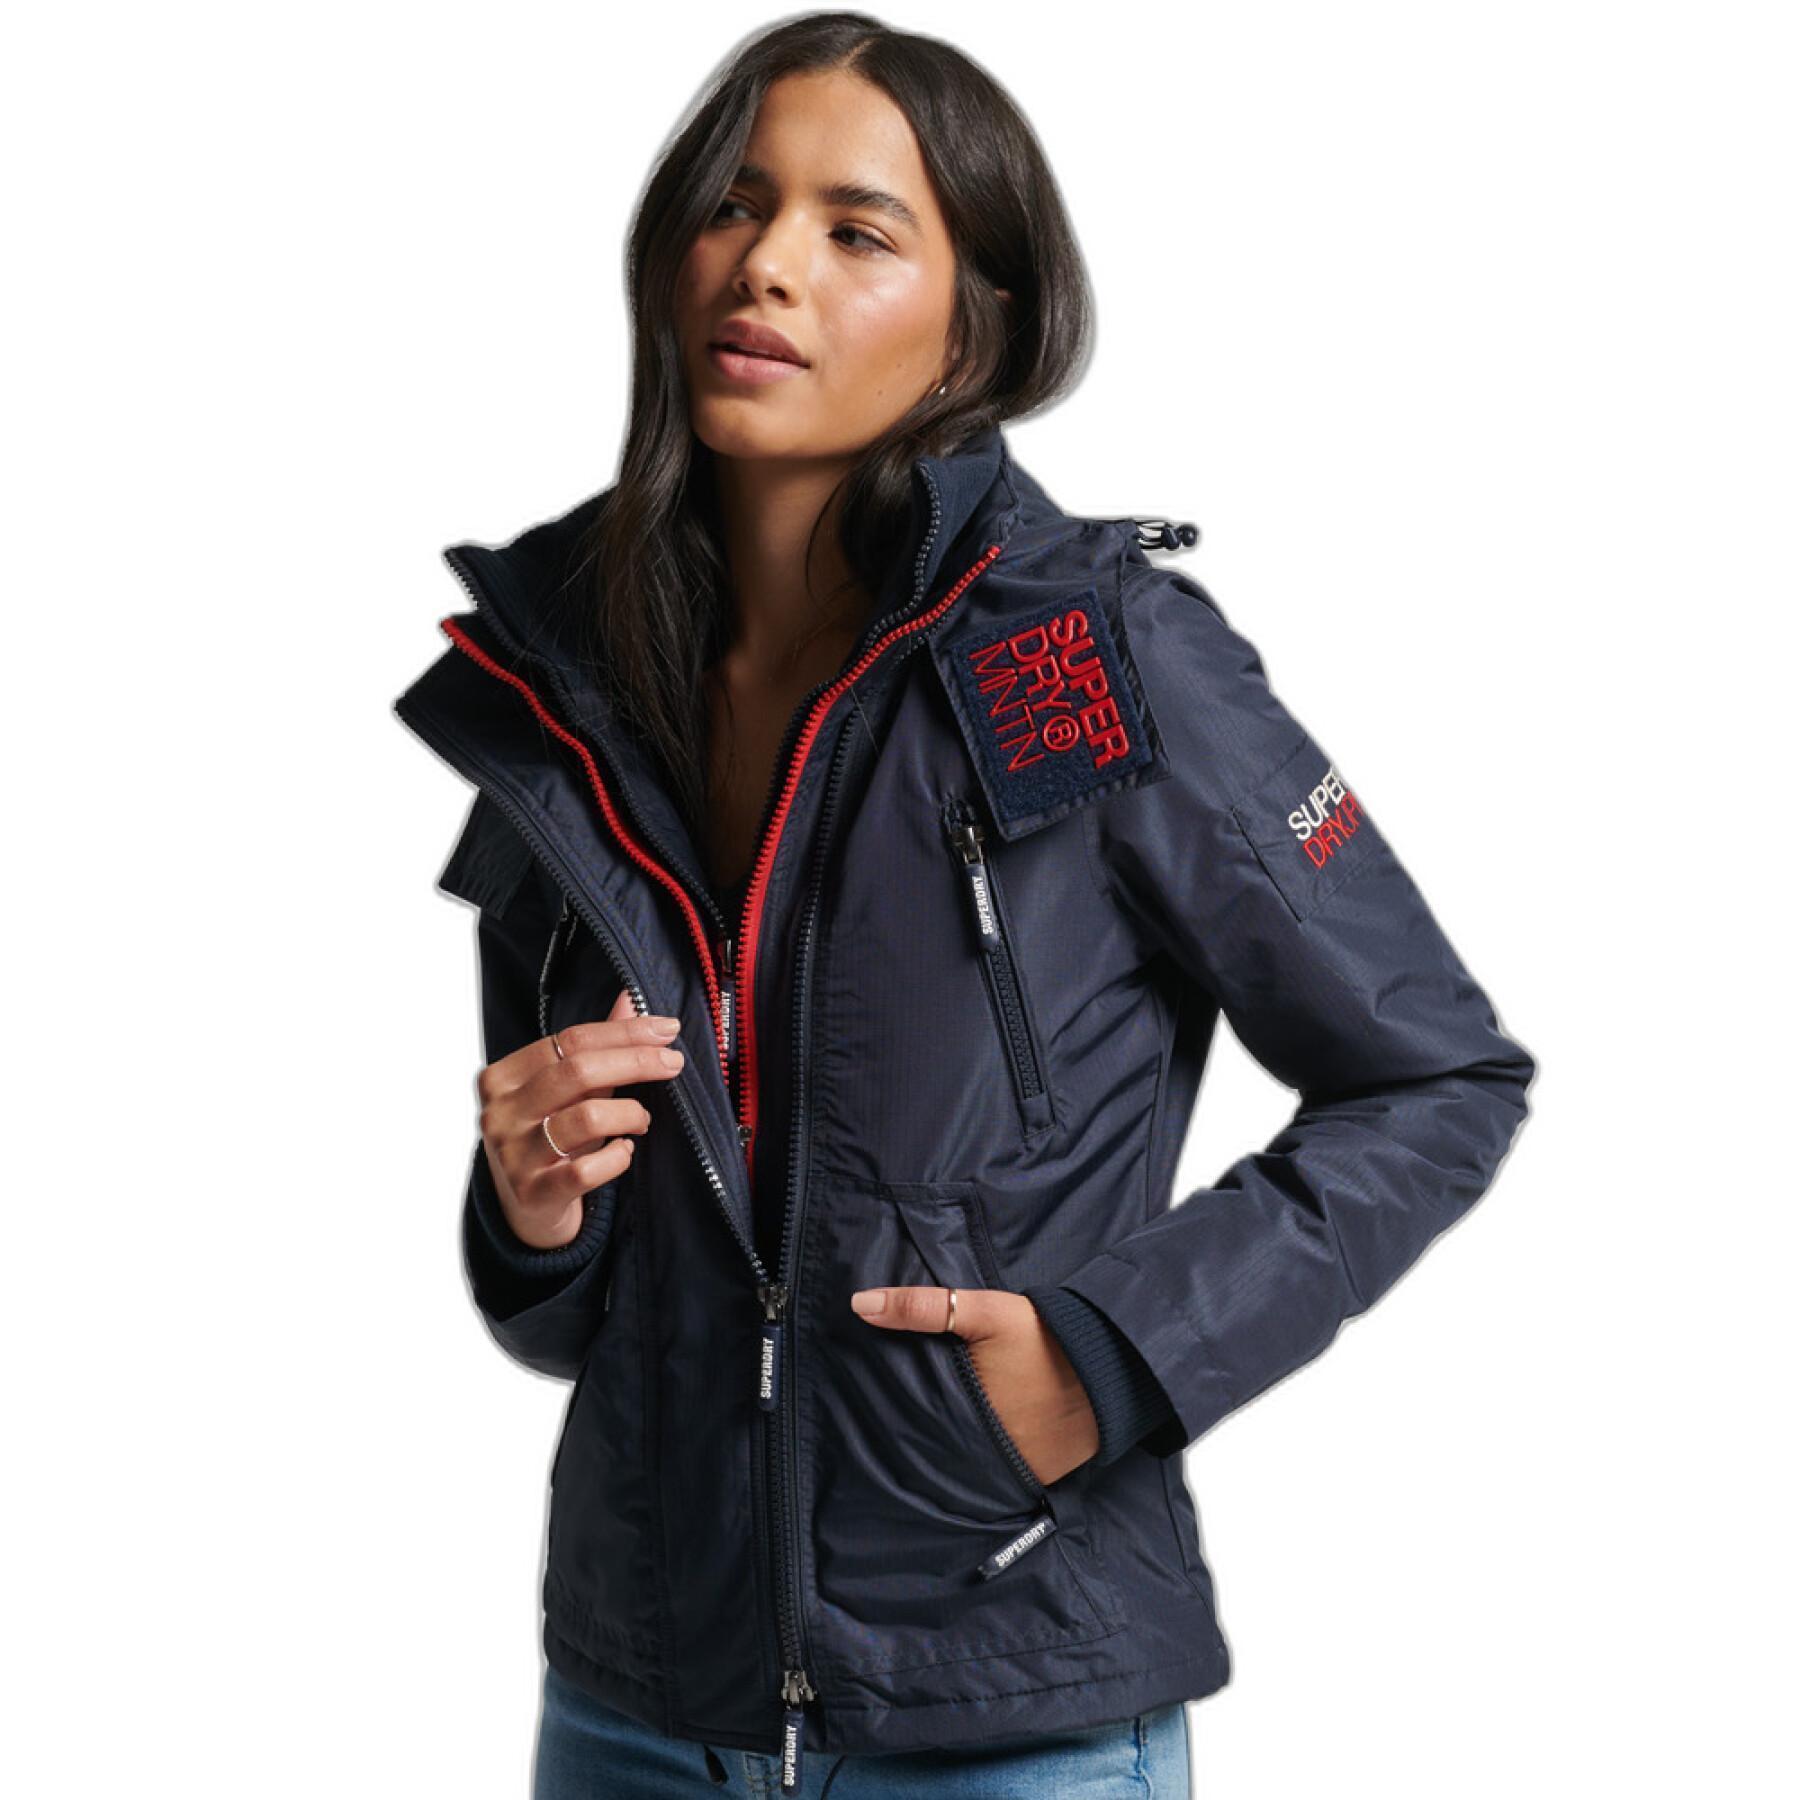 Women's waterproof jacket Superdry Mountain